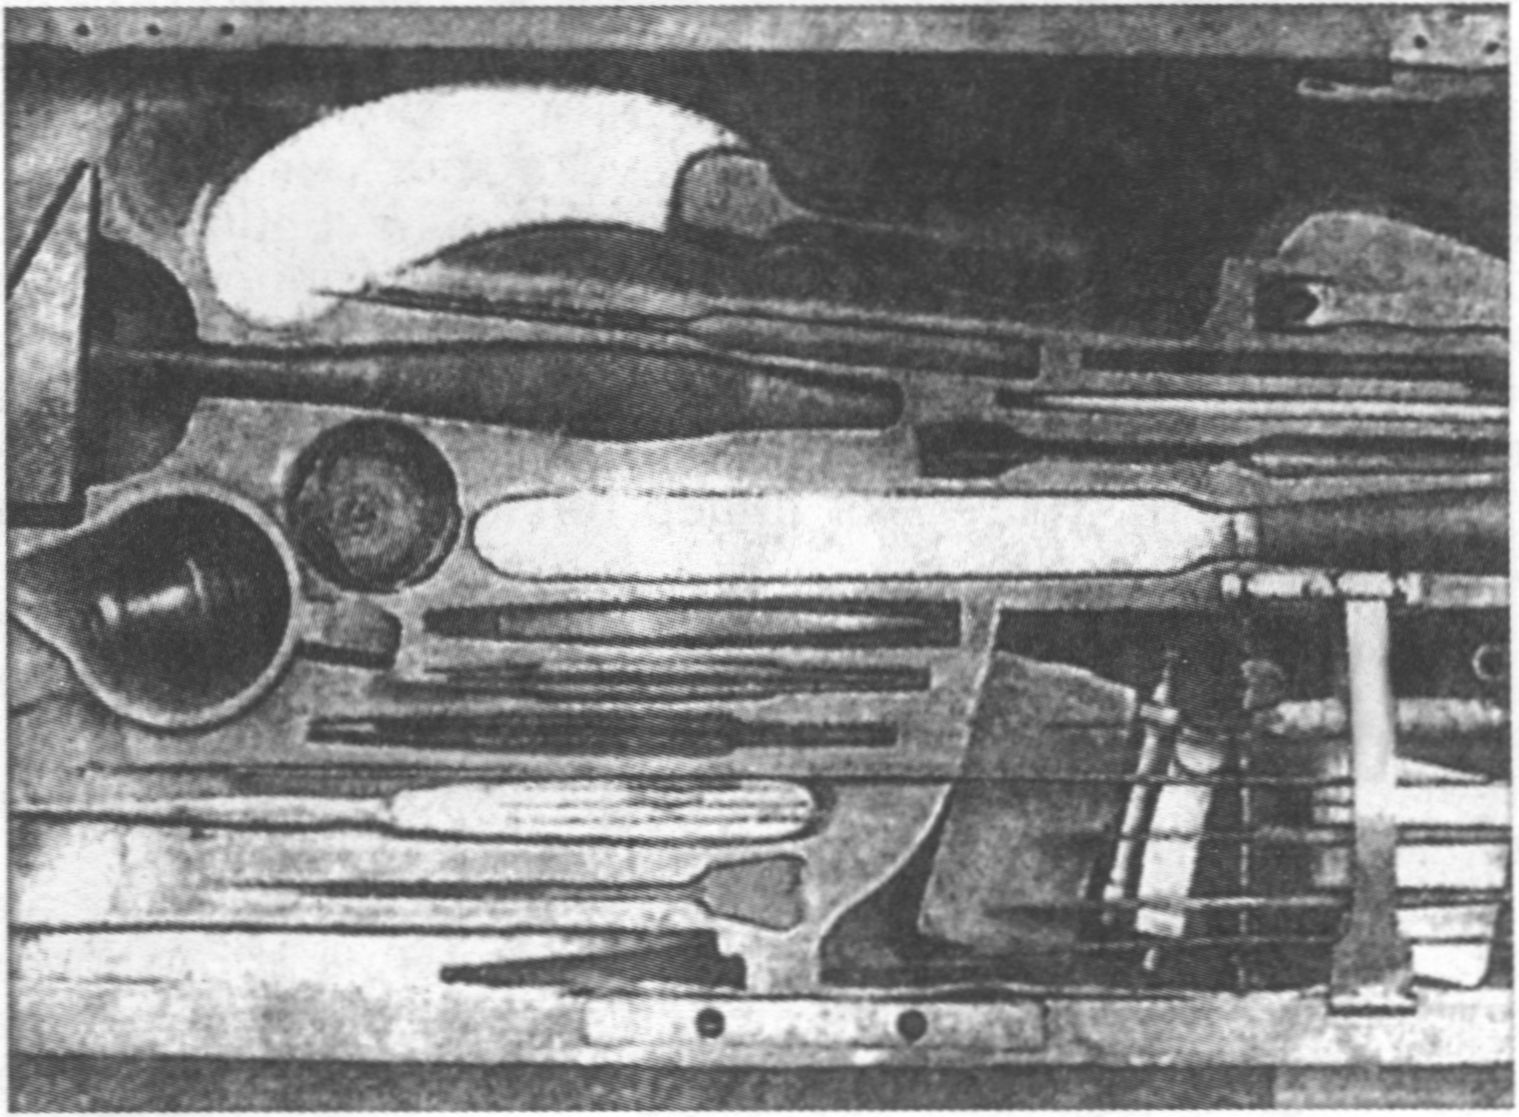 Хирургические инструменты Пирогова, которыми он сделал в 1847 г., в разгар Кавказской войны, первую операцию с применением наркоза